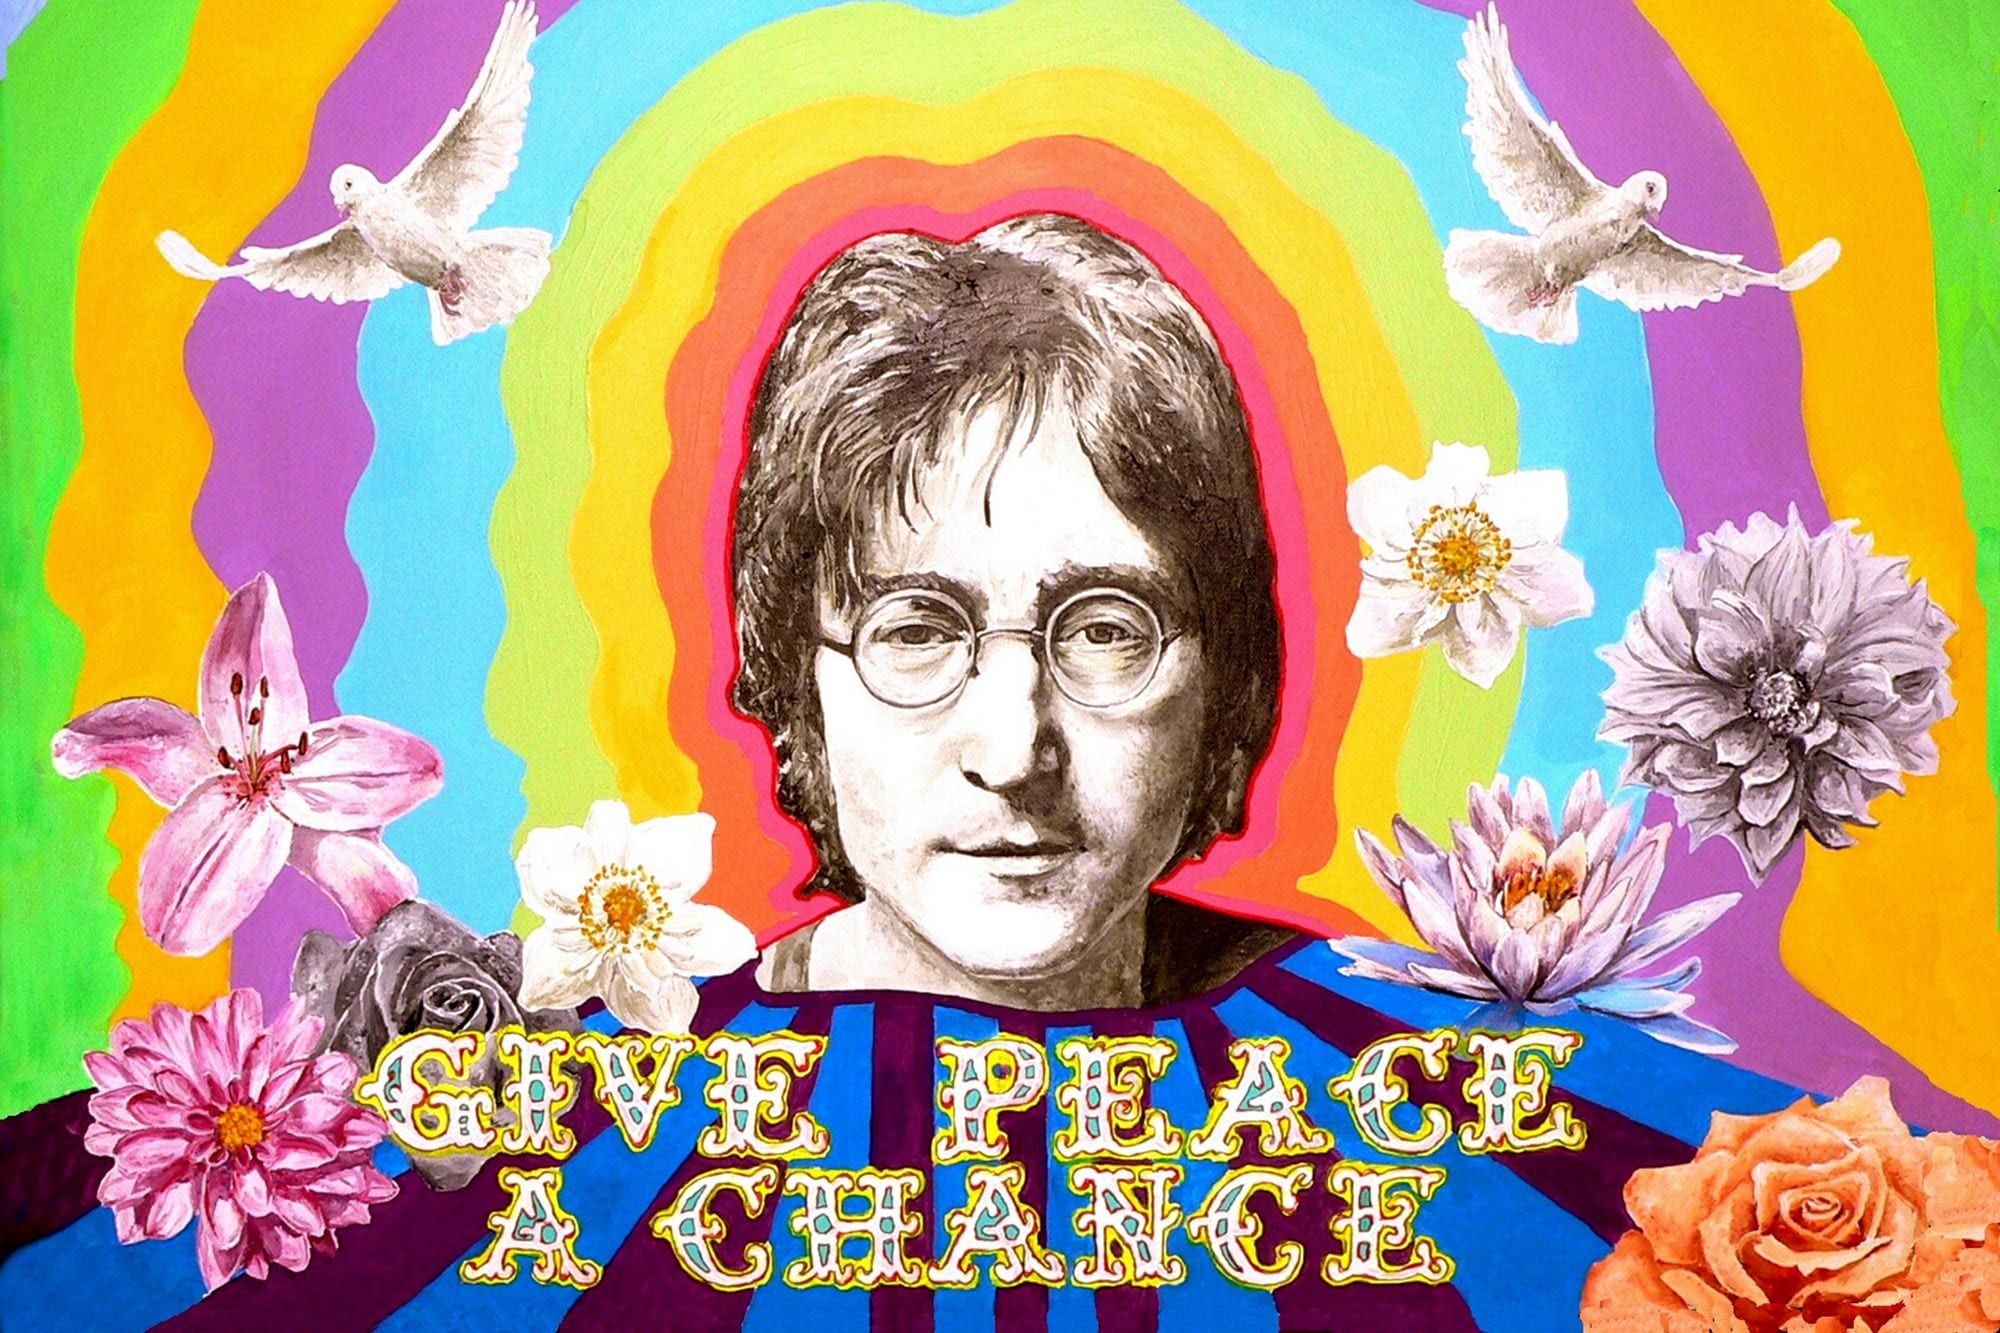 John Lennon: Revolutionary Man As Political Artist